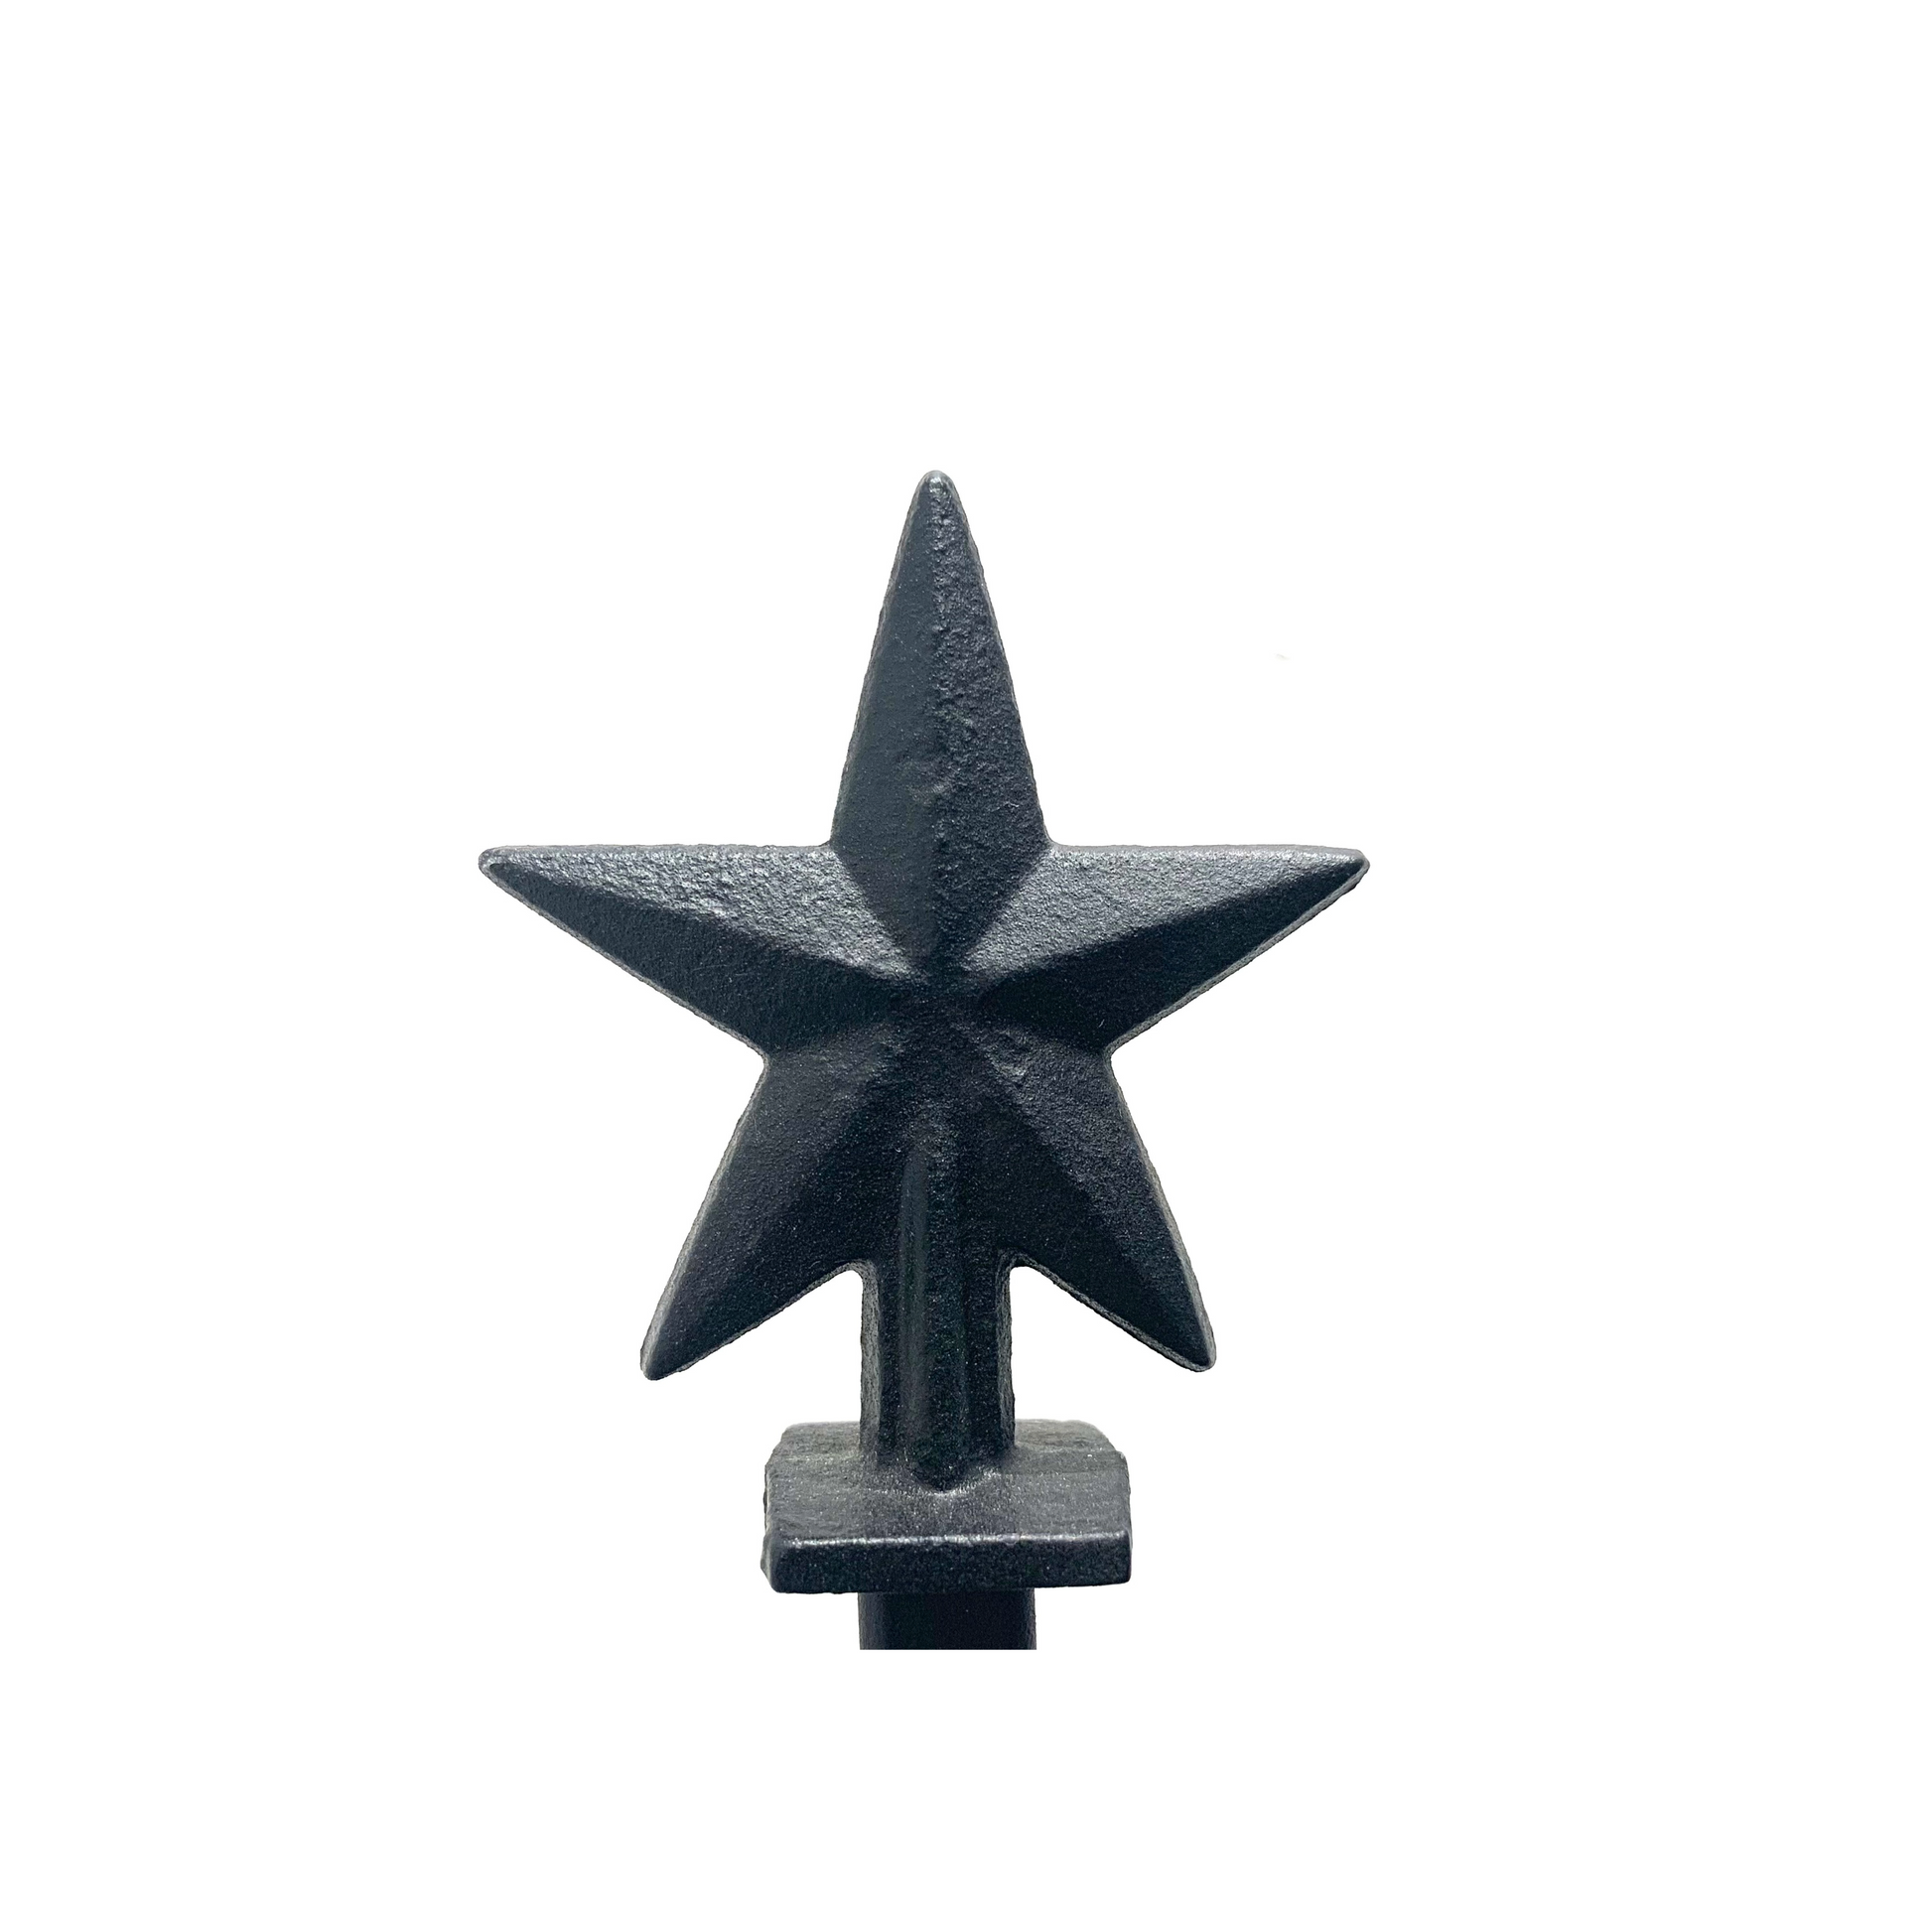 Black steel Star finial detail